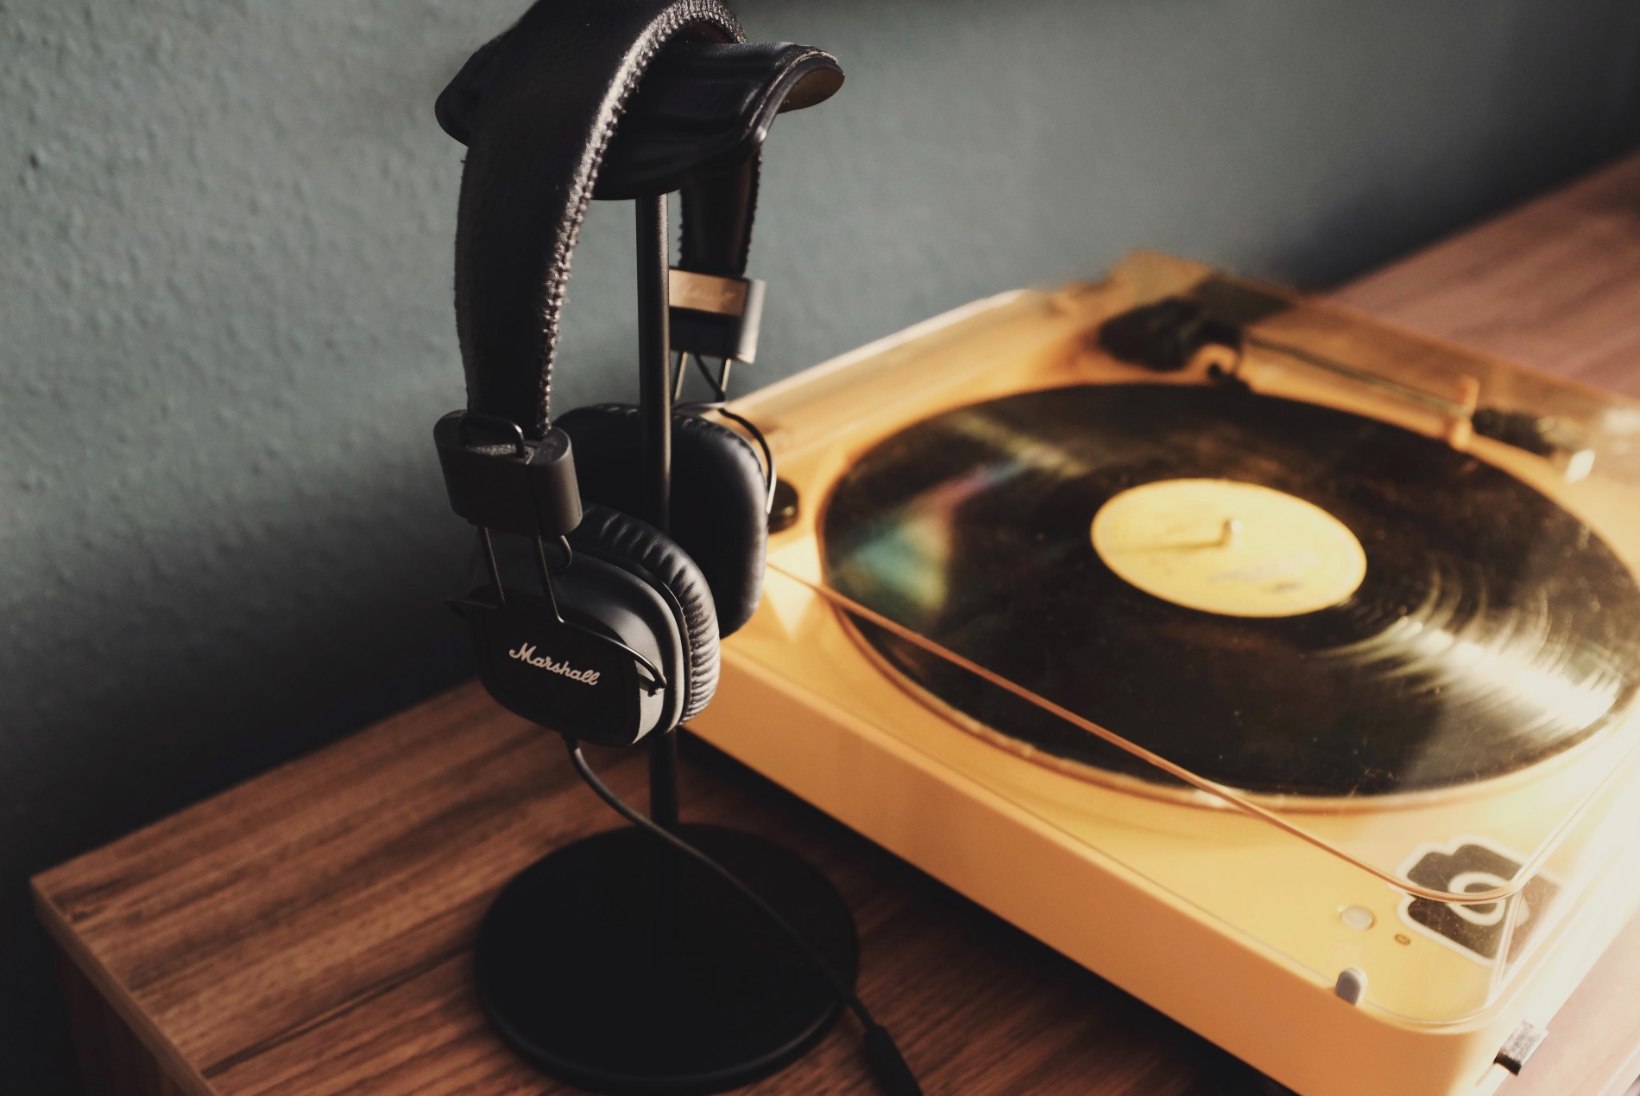 10 head põhjust, miks iga päev muusikat kuulata